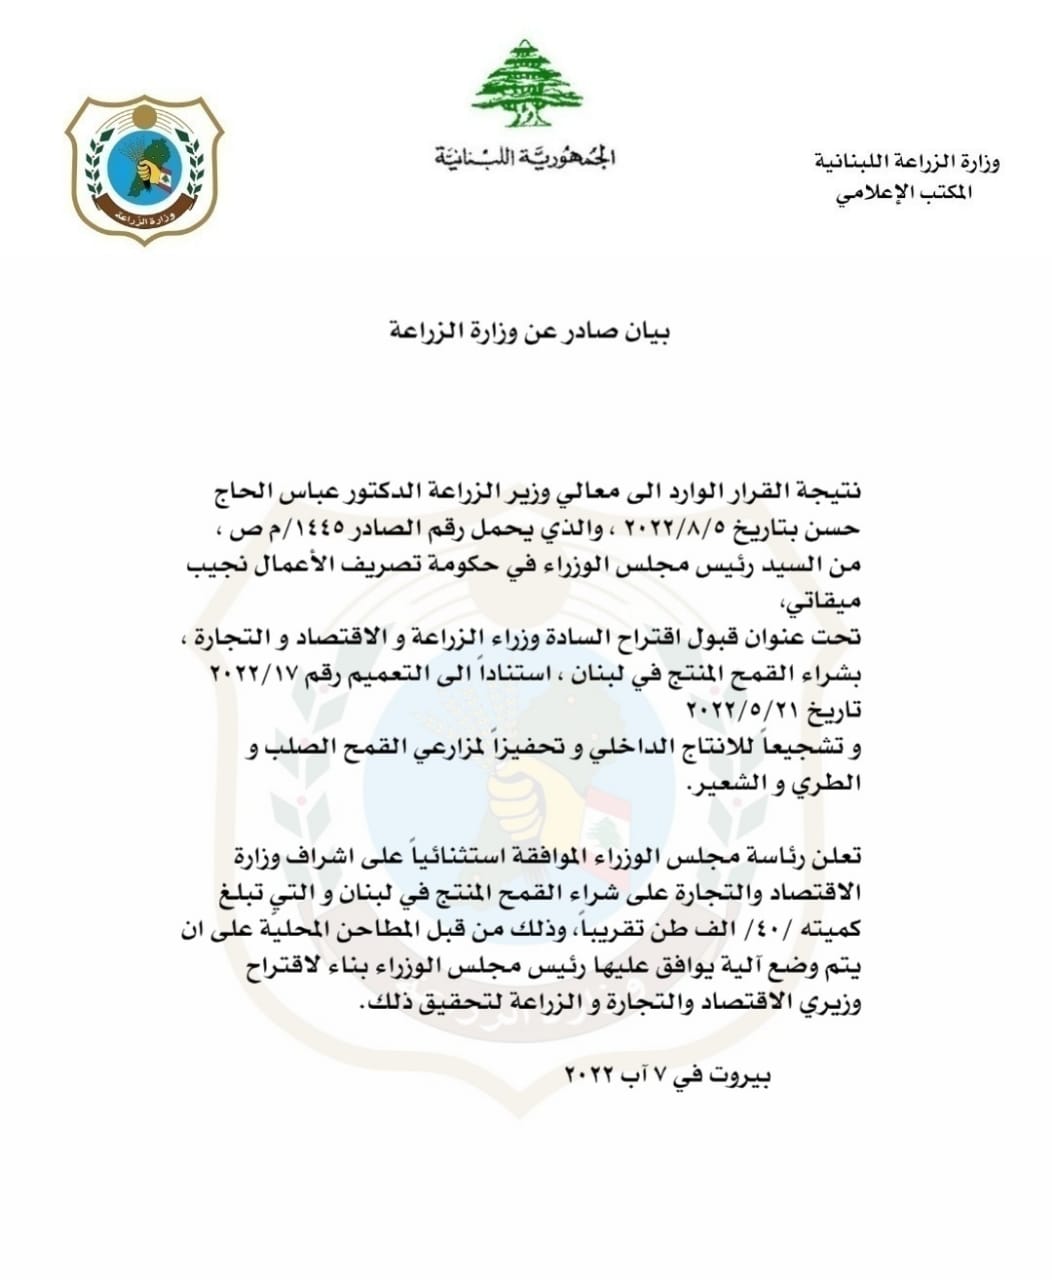 بيان صادر عن وزارة الزراعة بخصوص شراء محصول القمح اللبناني